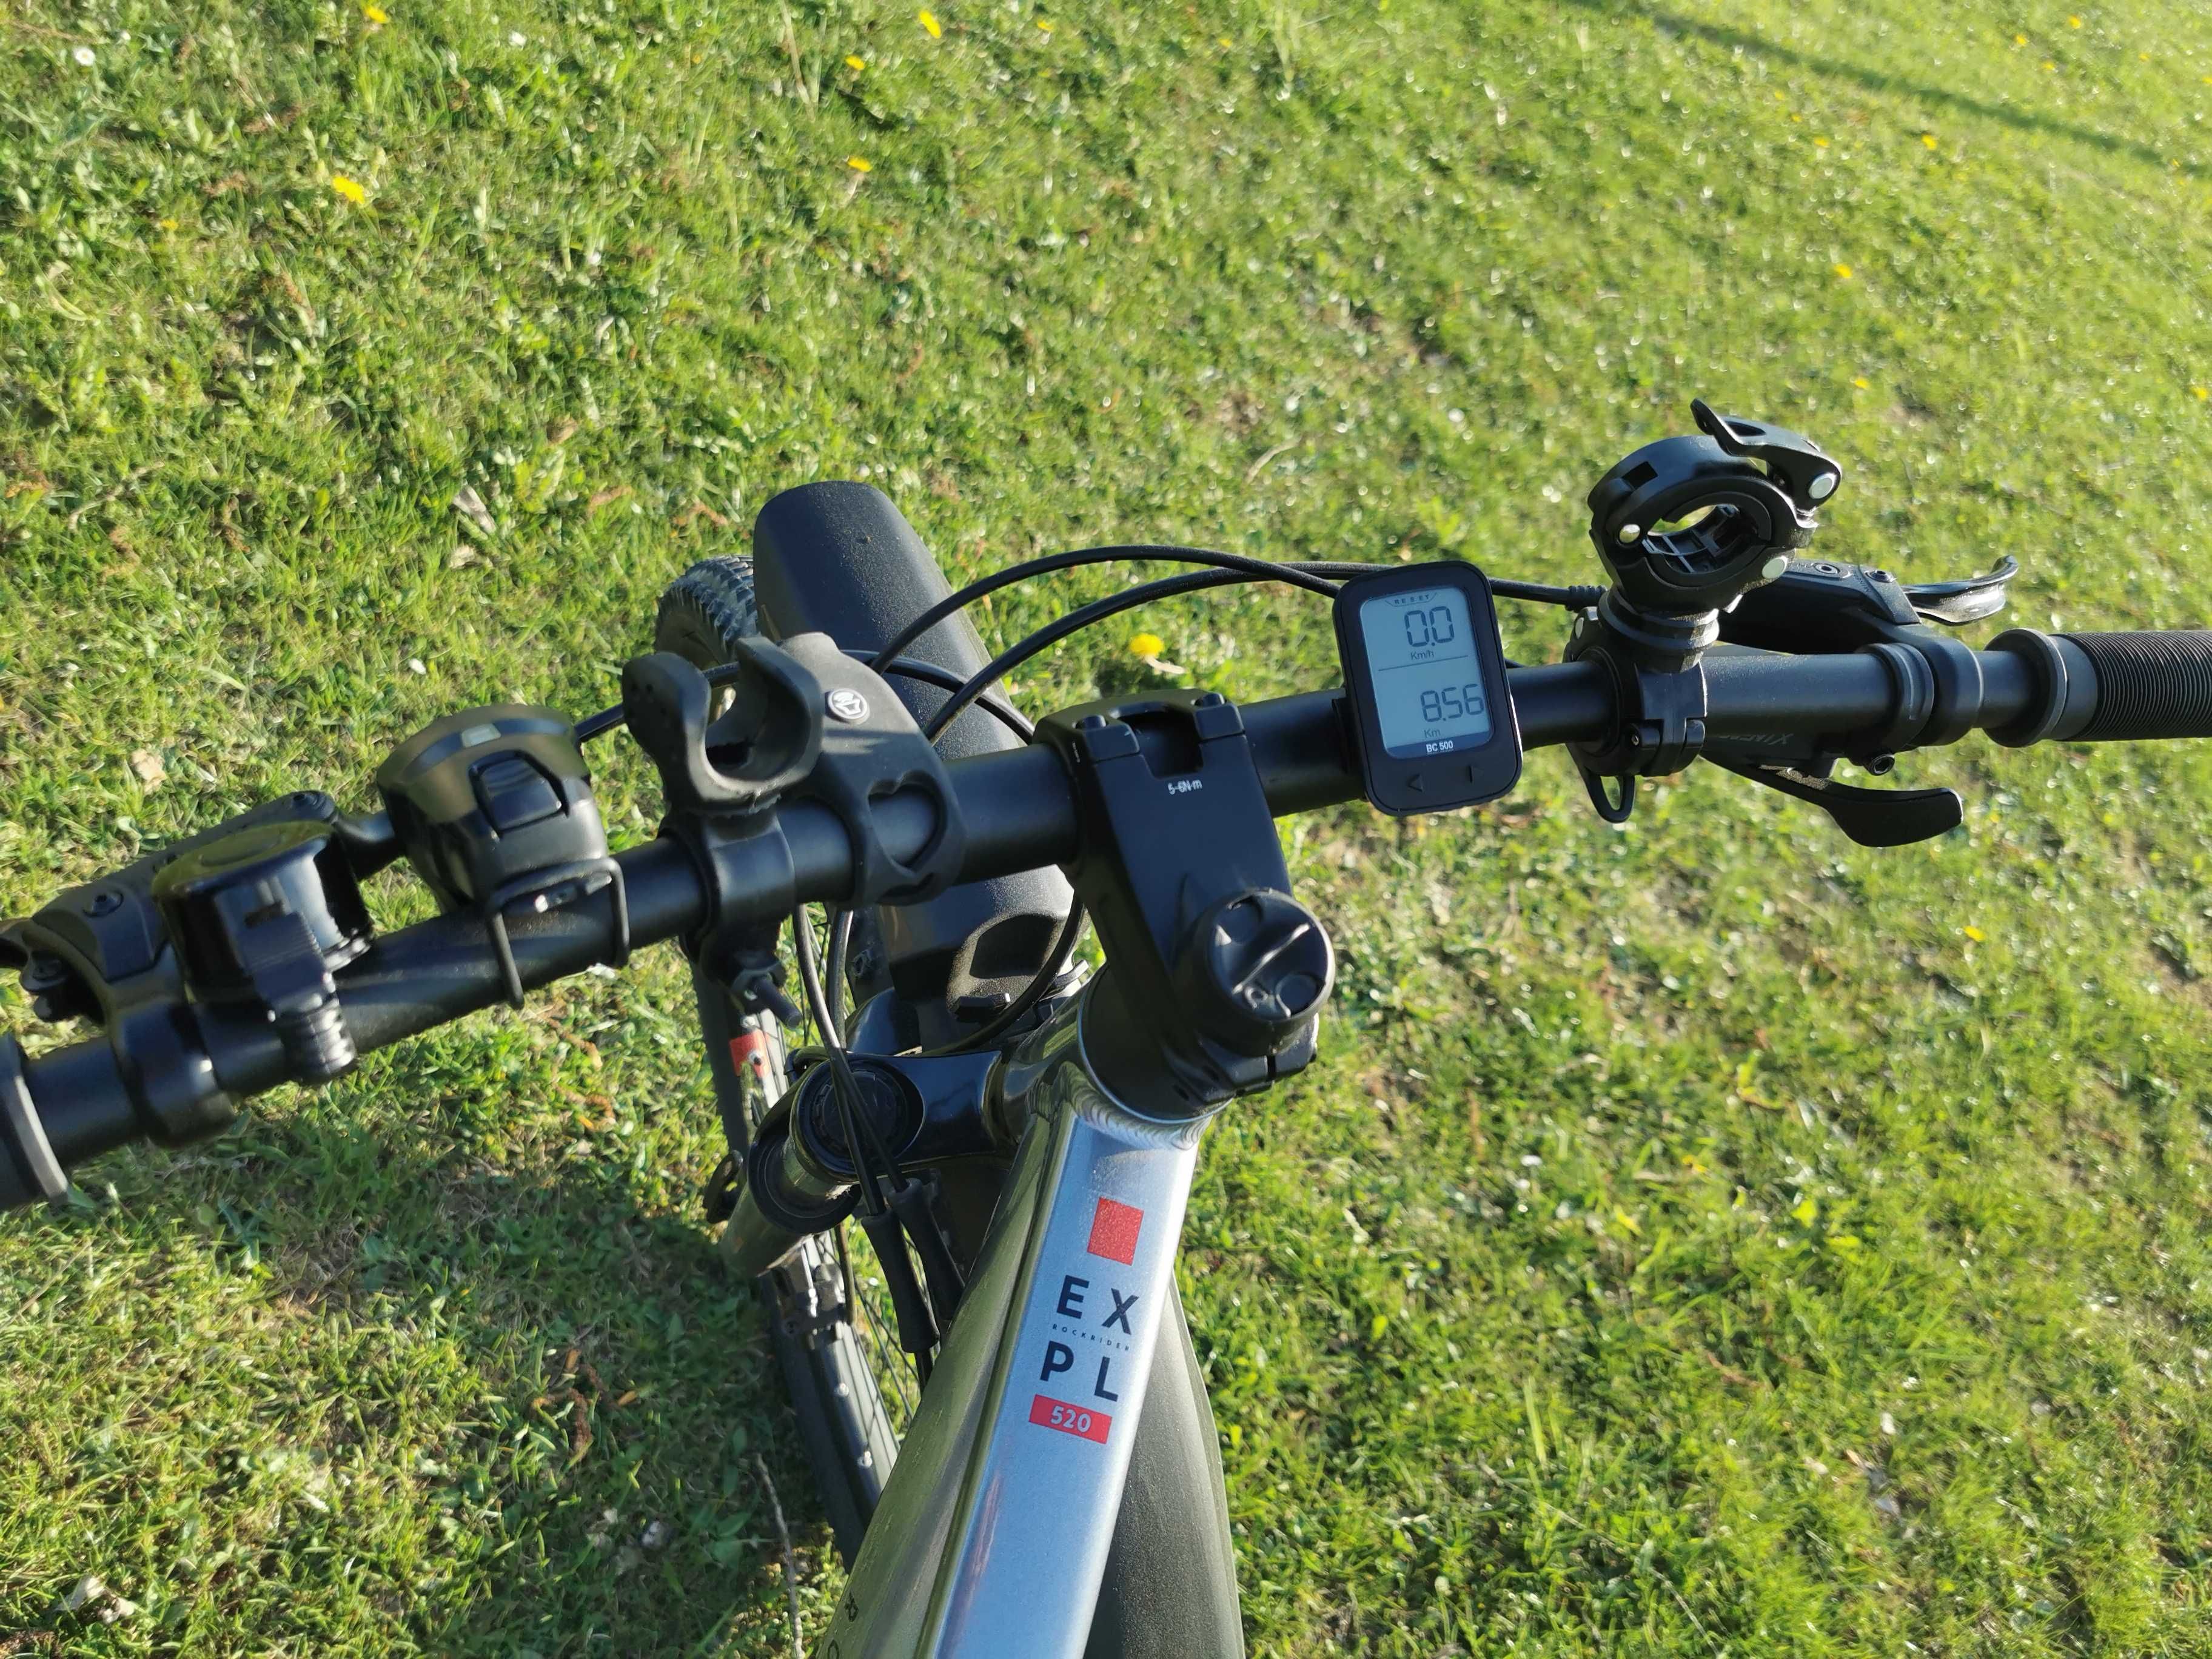 Bicicletă MTB EXPLORE 520 29" Gri-Roșu - marimea L - noua + accesorii